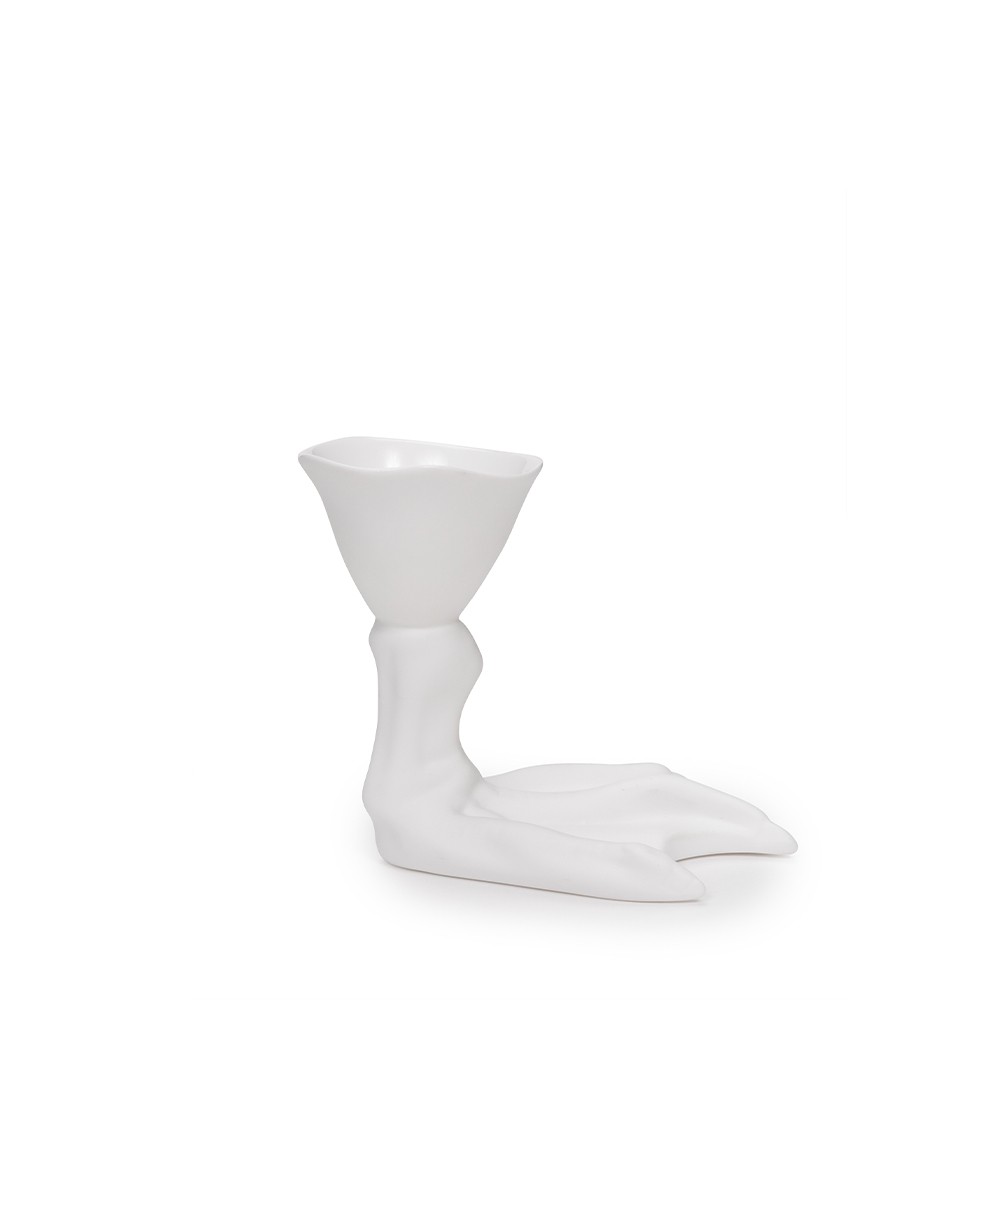 Hier abgebildet der Egg Cup White Peking von Roos van de Velde mit Serax - RAUM concept store